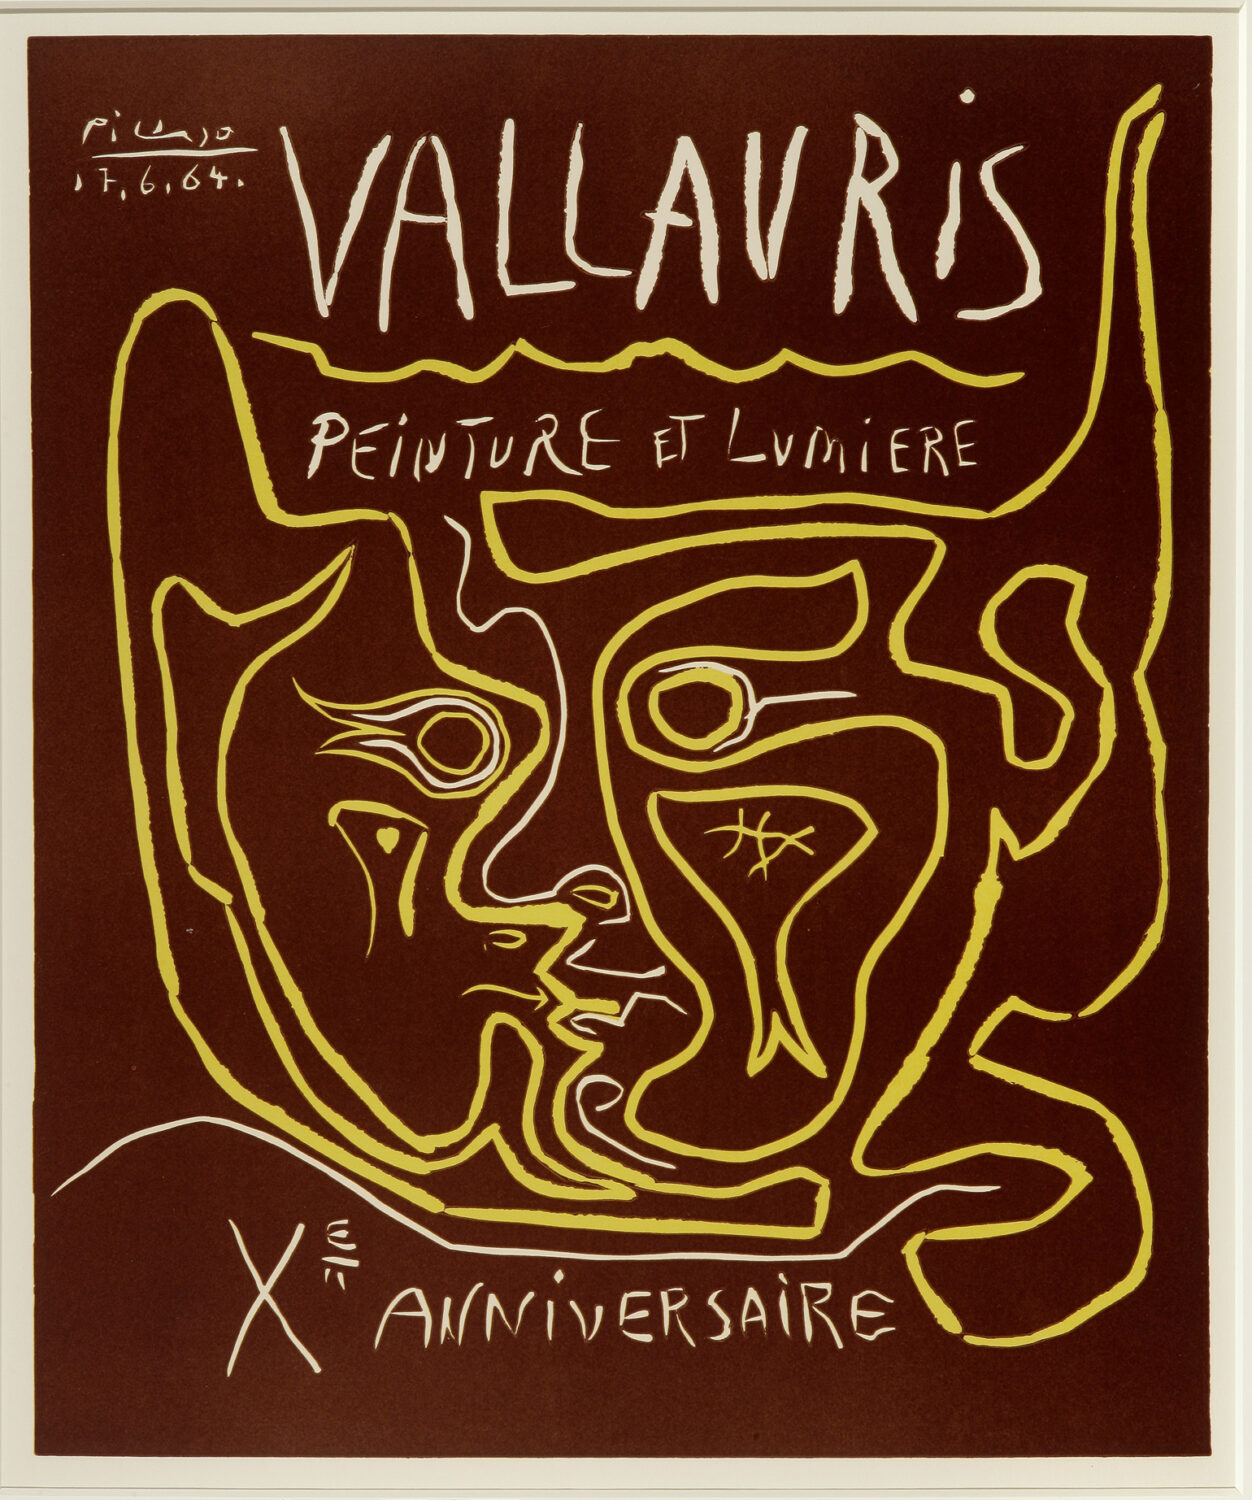 thumbnail of Lino-cut by Pablo Picasso titled Vallauris, Peintre et Lumier, Xe Anniversaire.